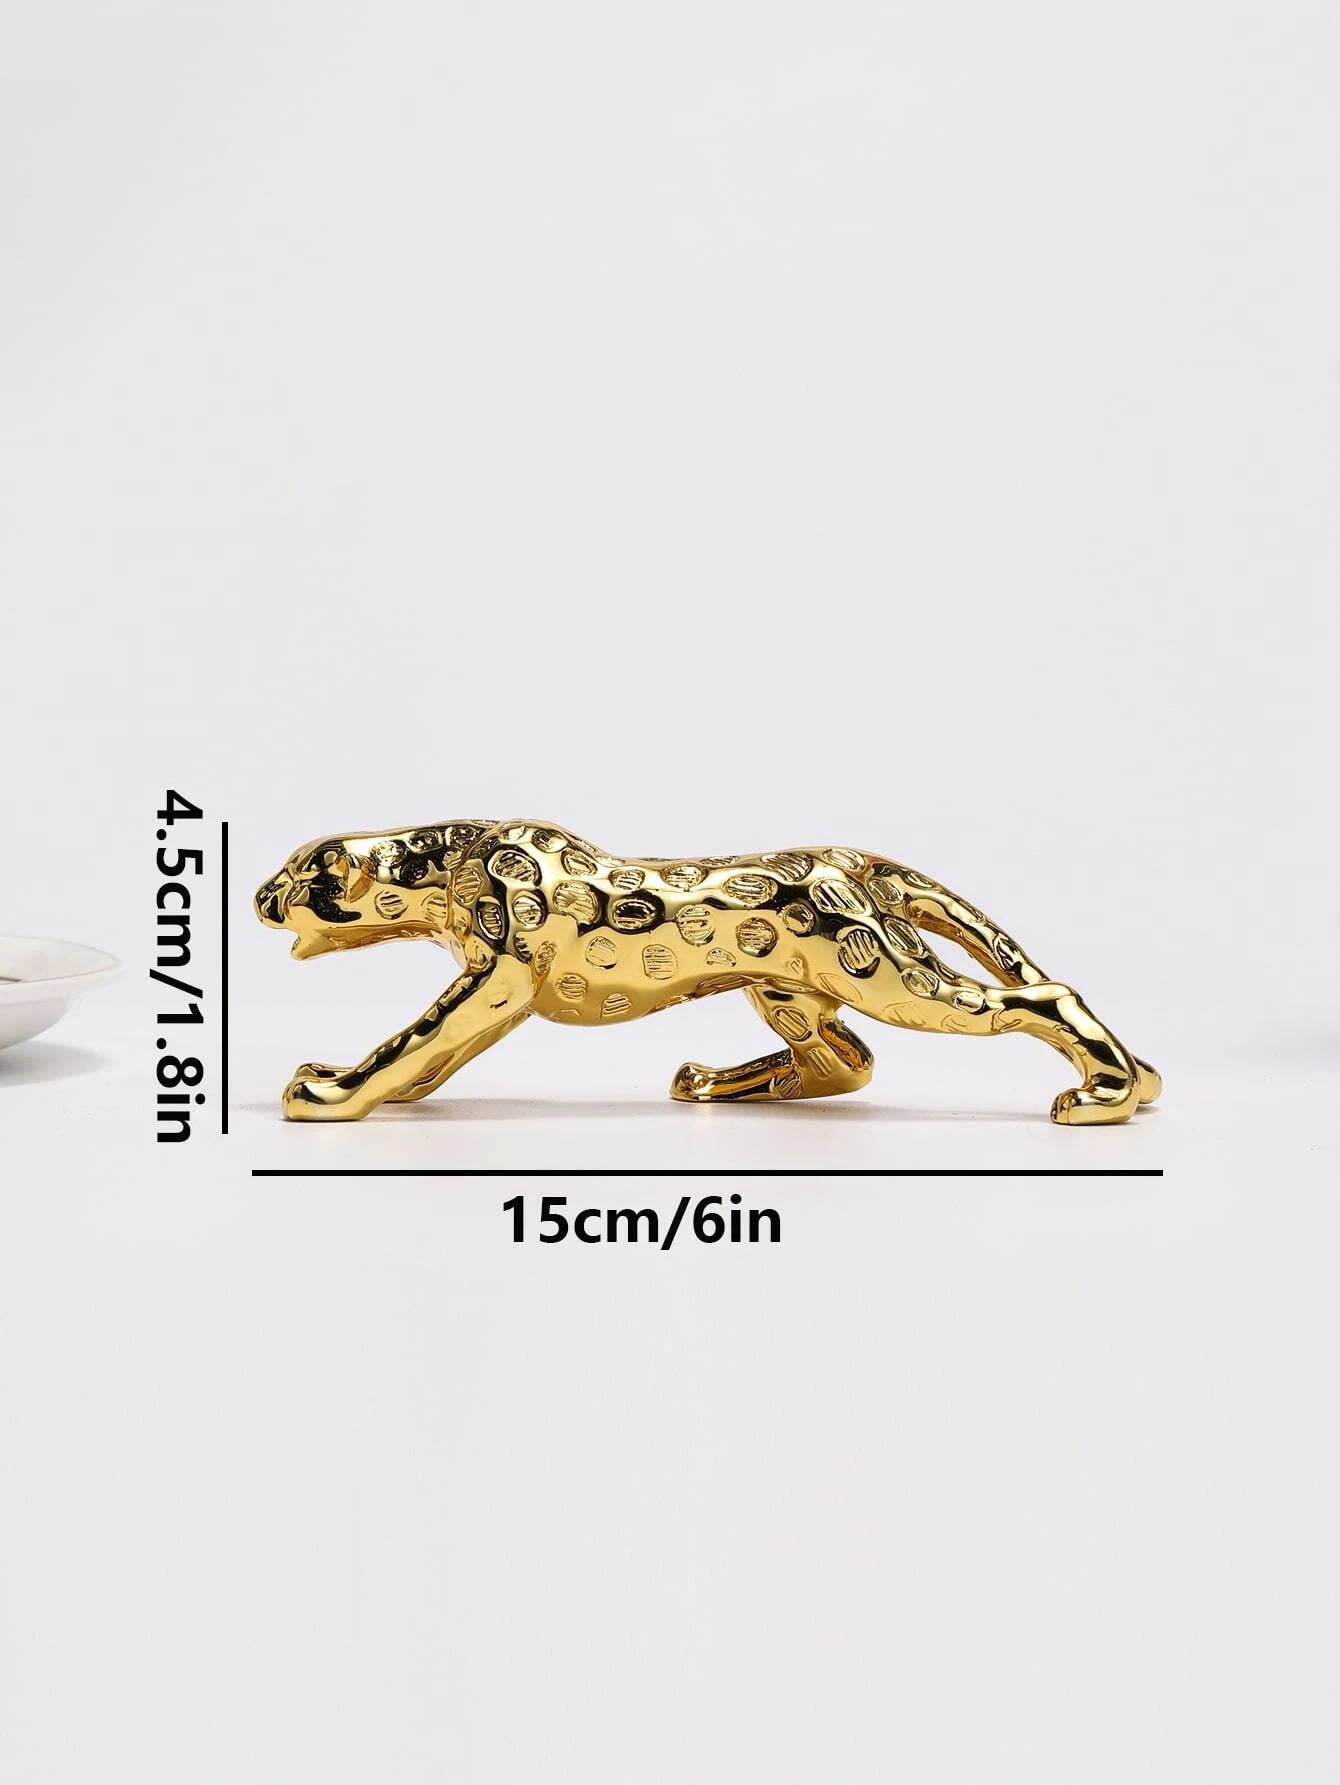 منحوتة مودرن بوليستون ديكور بطباعة جلد الفهد تصميم فهد قطعة واحدة بوليريسين ، 15 سم× 4 سم × 4.5 سم ، ذهبي